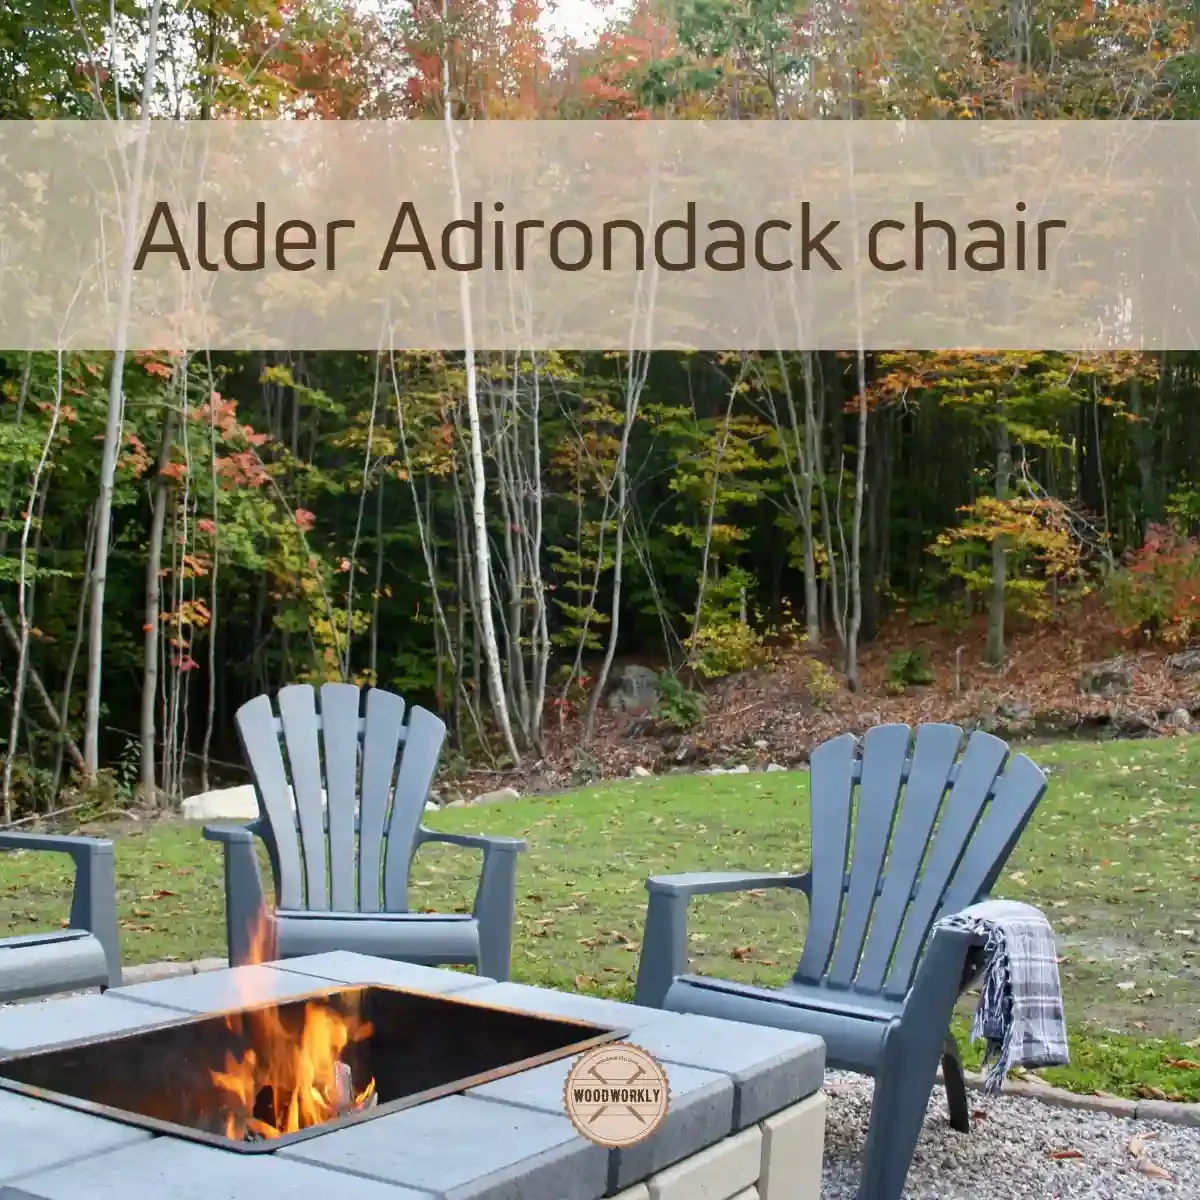 Alder Adirondack chair